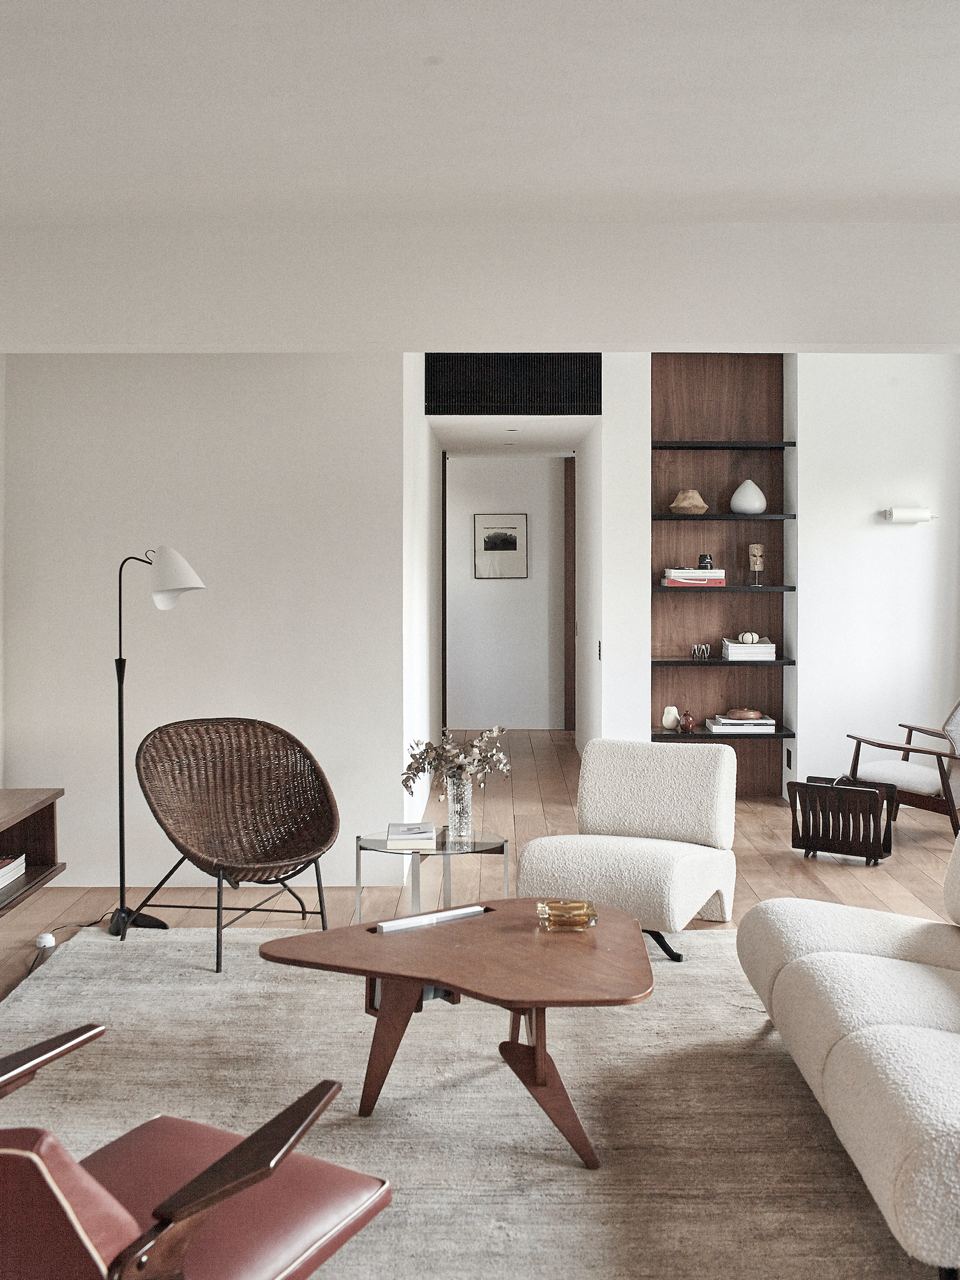 圣保罗一位 40 岁的单身汉的简约室内设计|ART-Arrakis | 建筑室内设计的创新与灵感